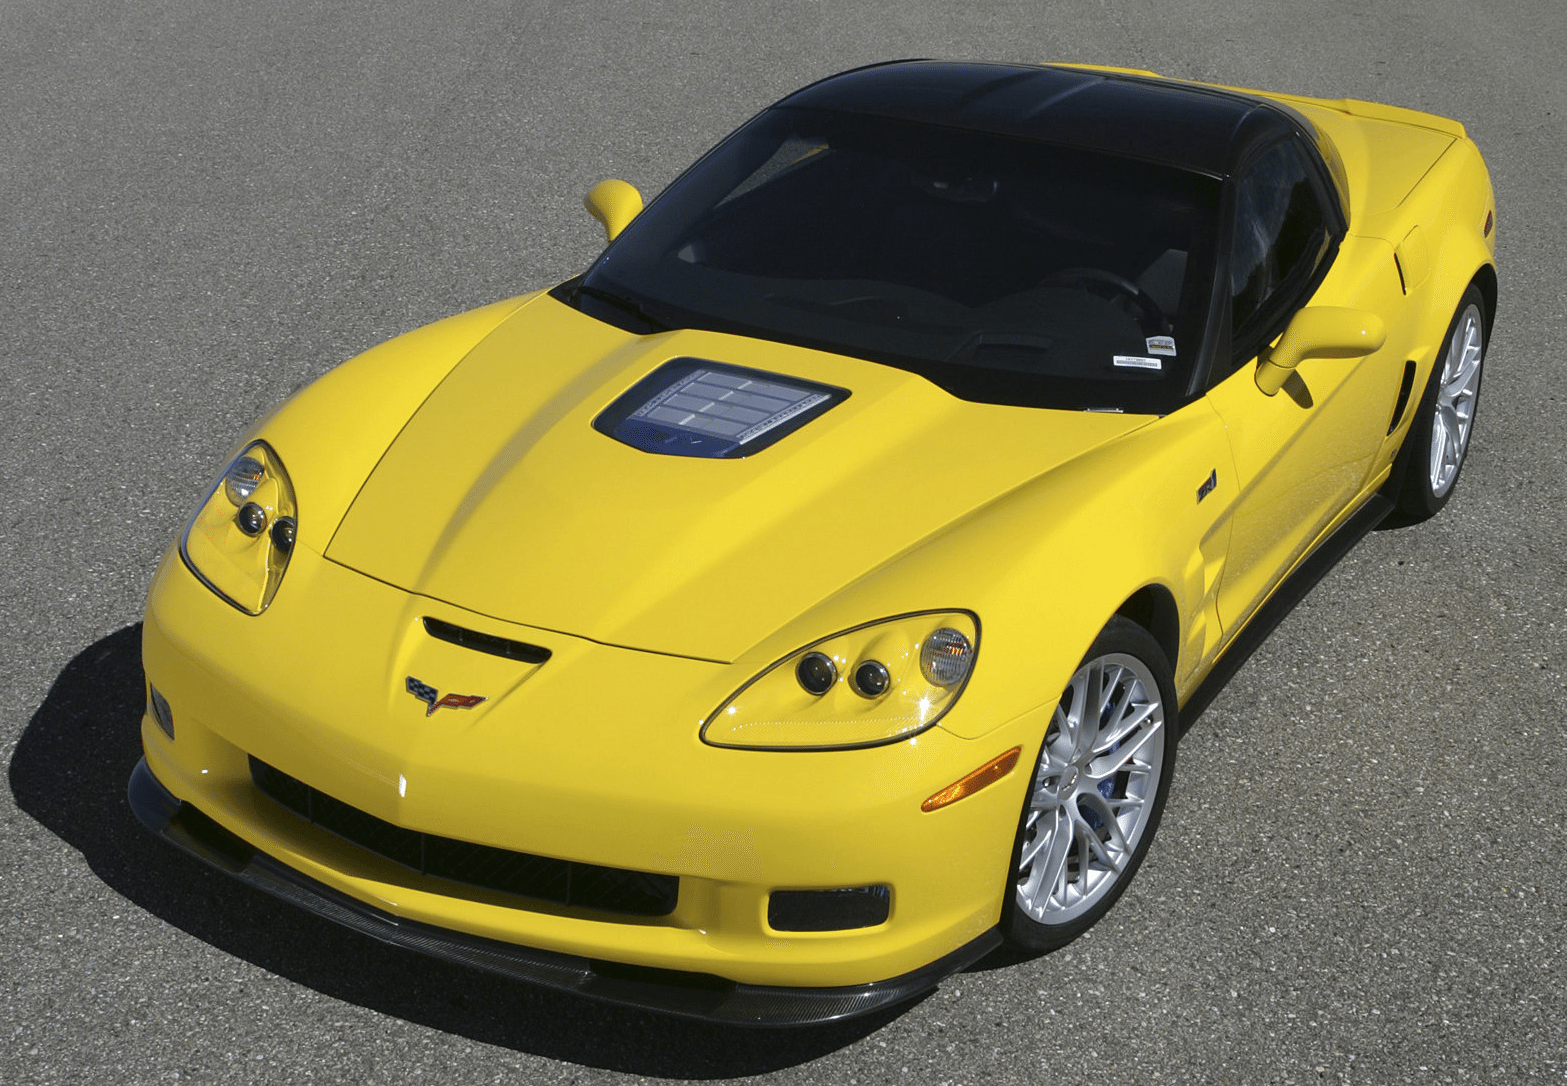 2009 C6 Corvette ZR1 Pictures & Images.